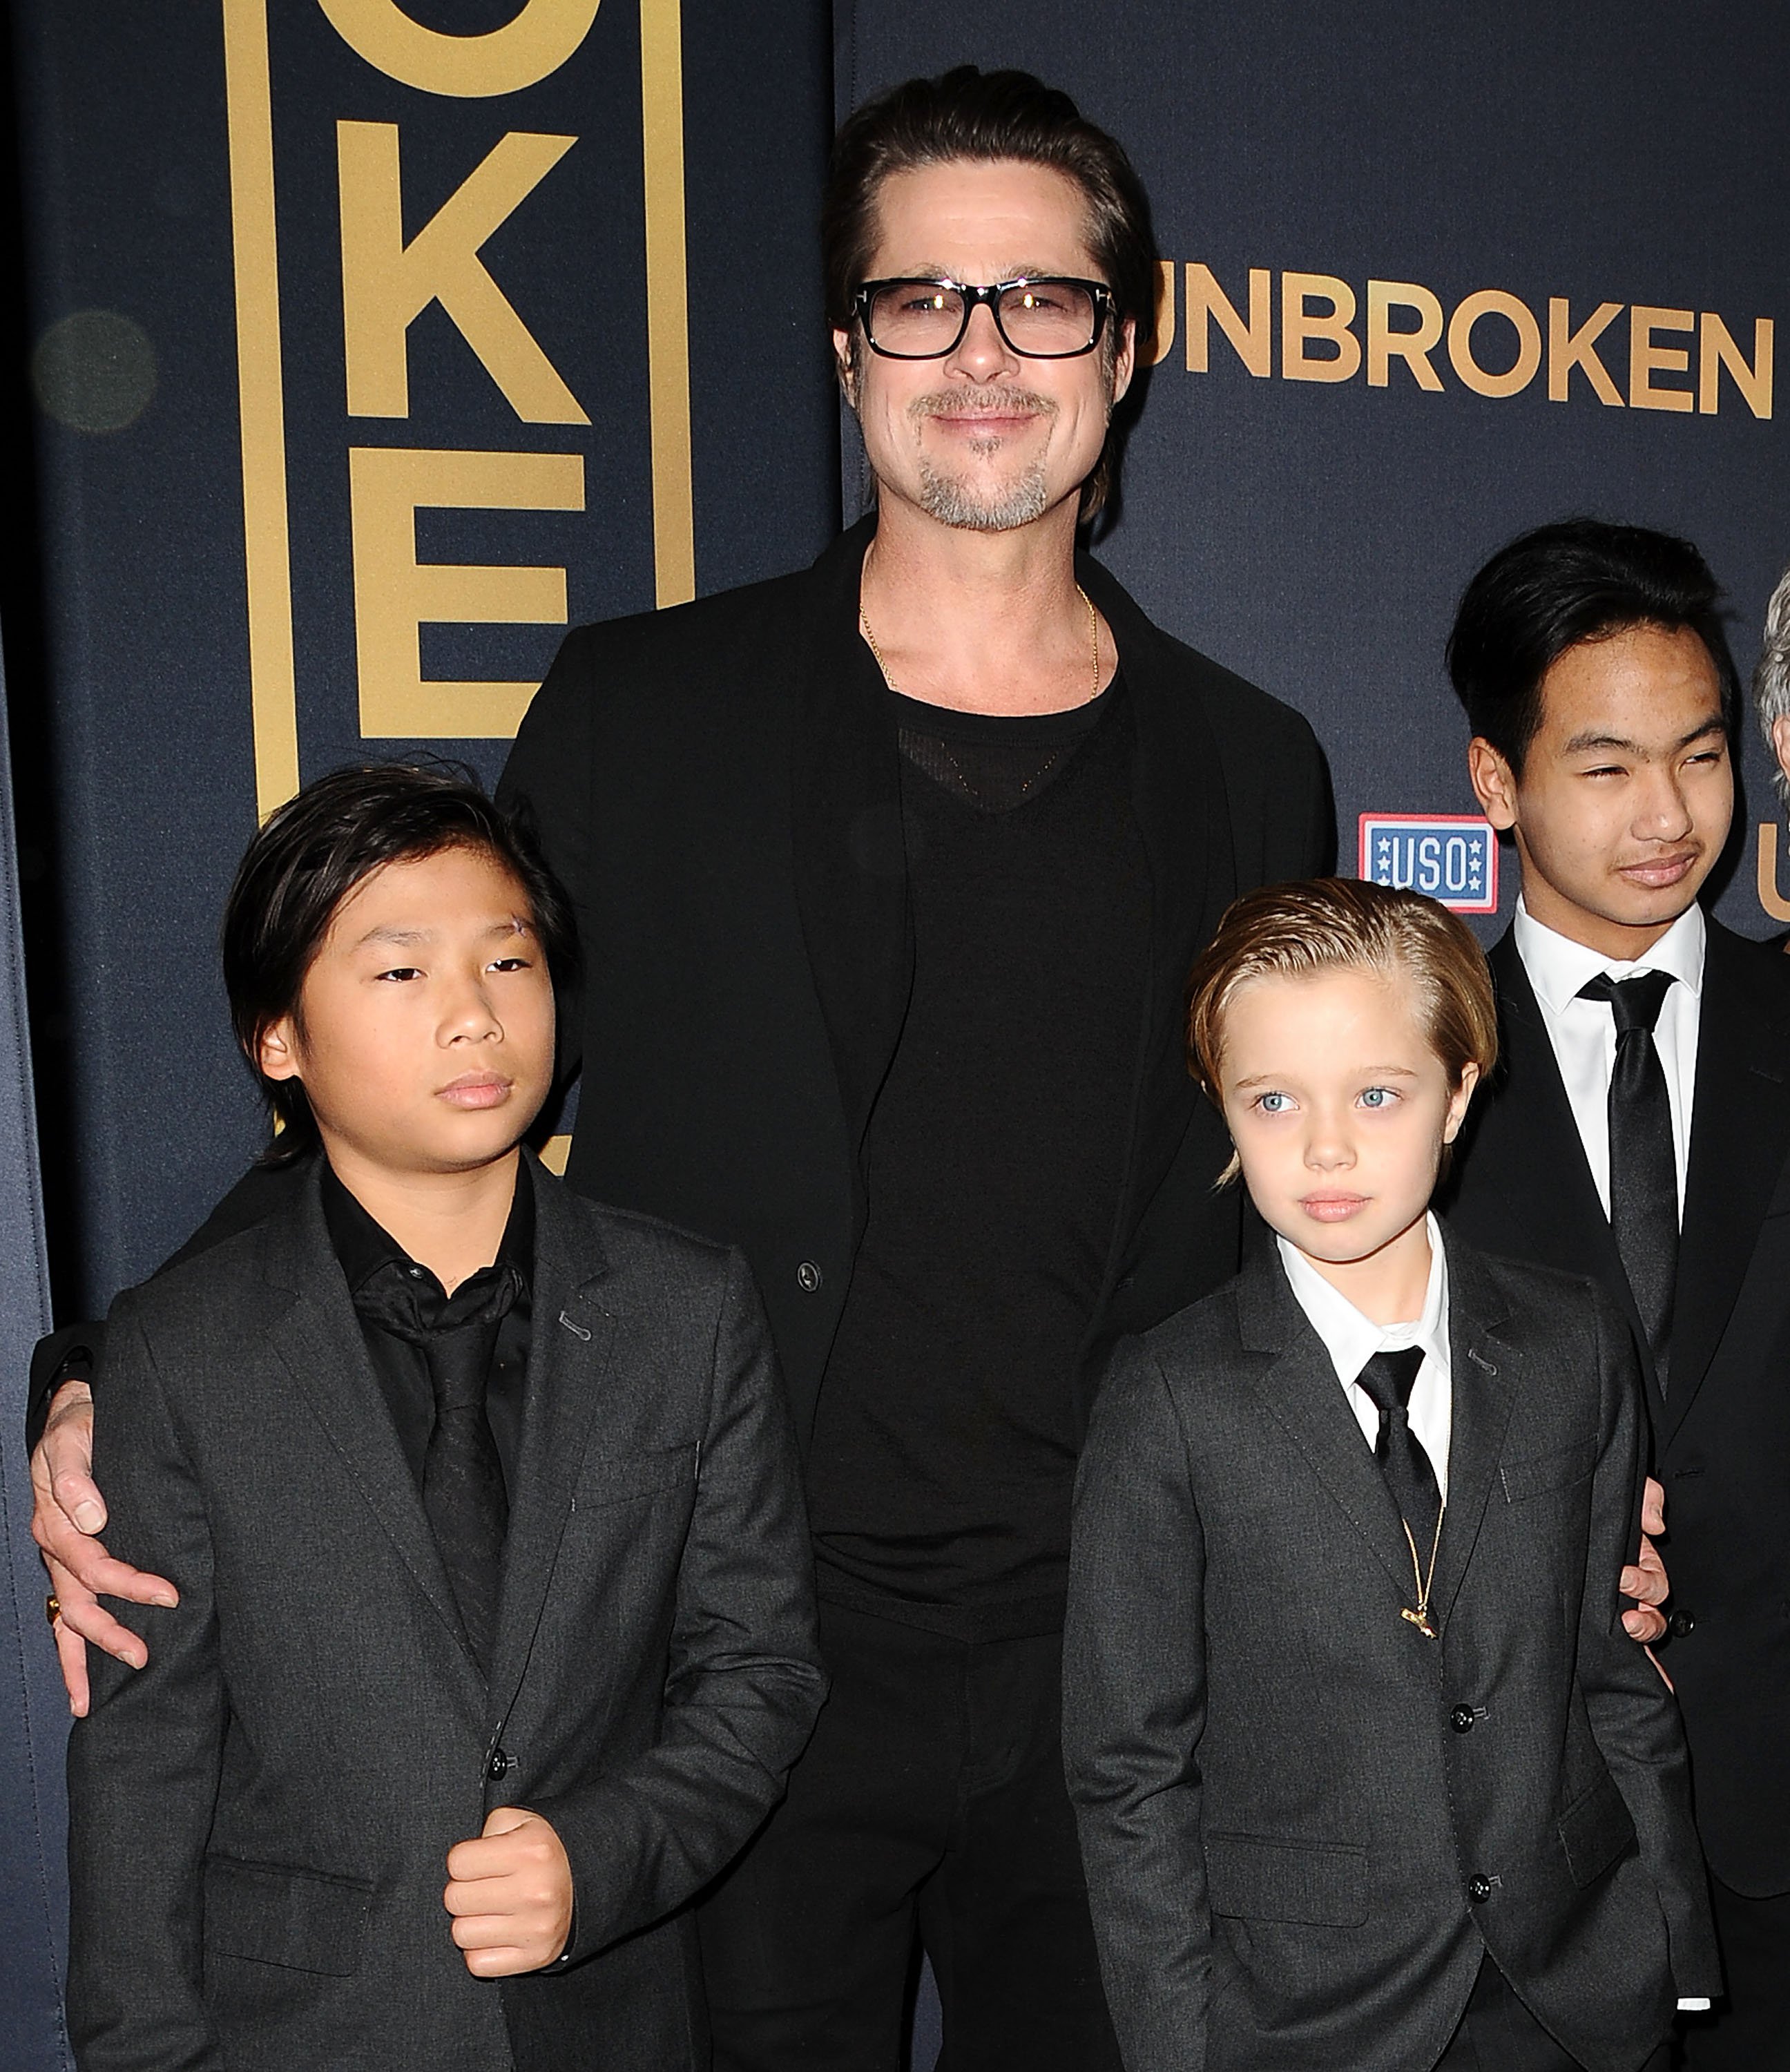 Pax Thien Jolie-Pitt, Brad Pitt, Shiloh Nouvel Jolie-Pitt y Maddox Jolie-Pitt en el estreno de "Unbroken" en el TCL Chinese Theatre IMAX, el 15 de diciembre de 2014 en Hollywood, California. | Foto: Getty Images